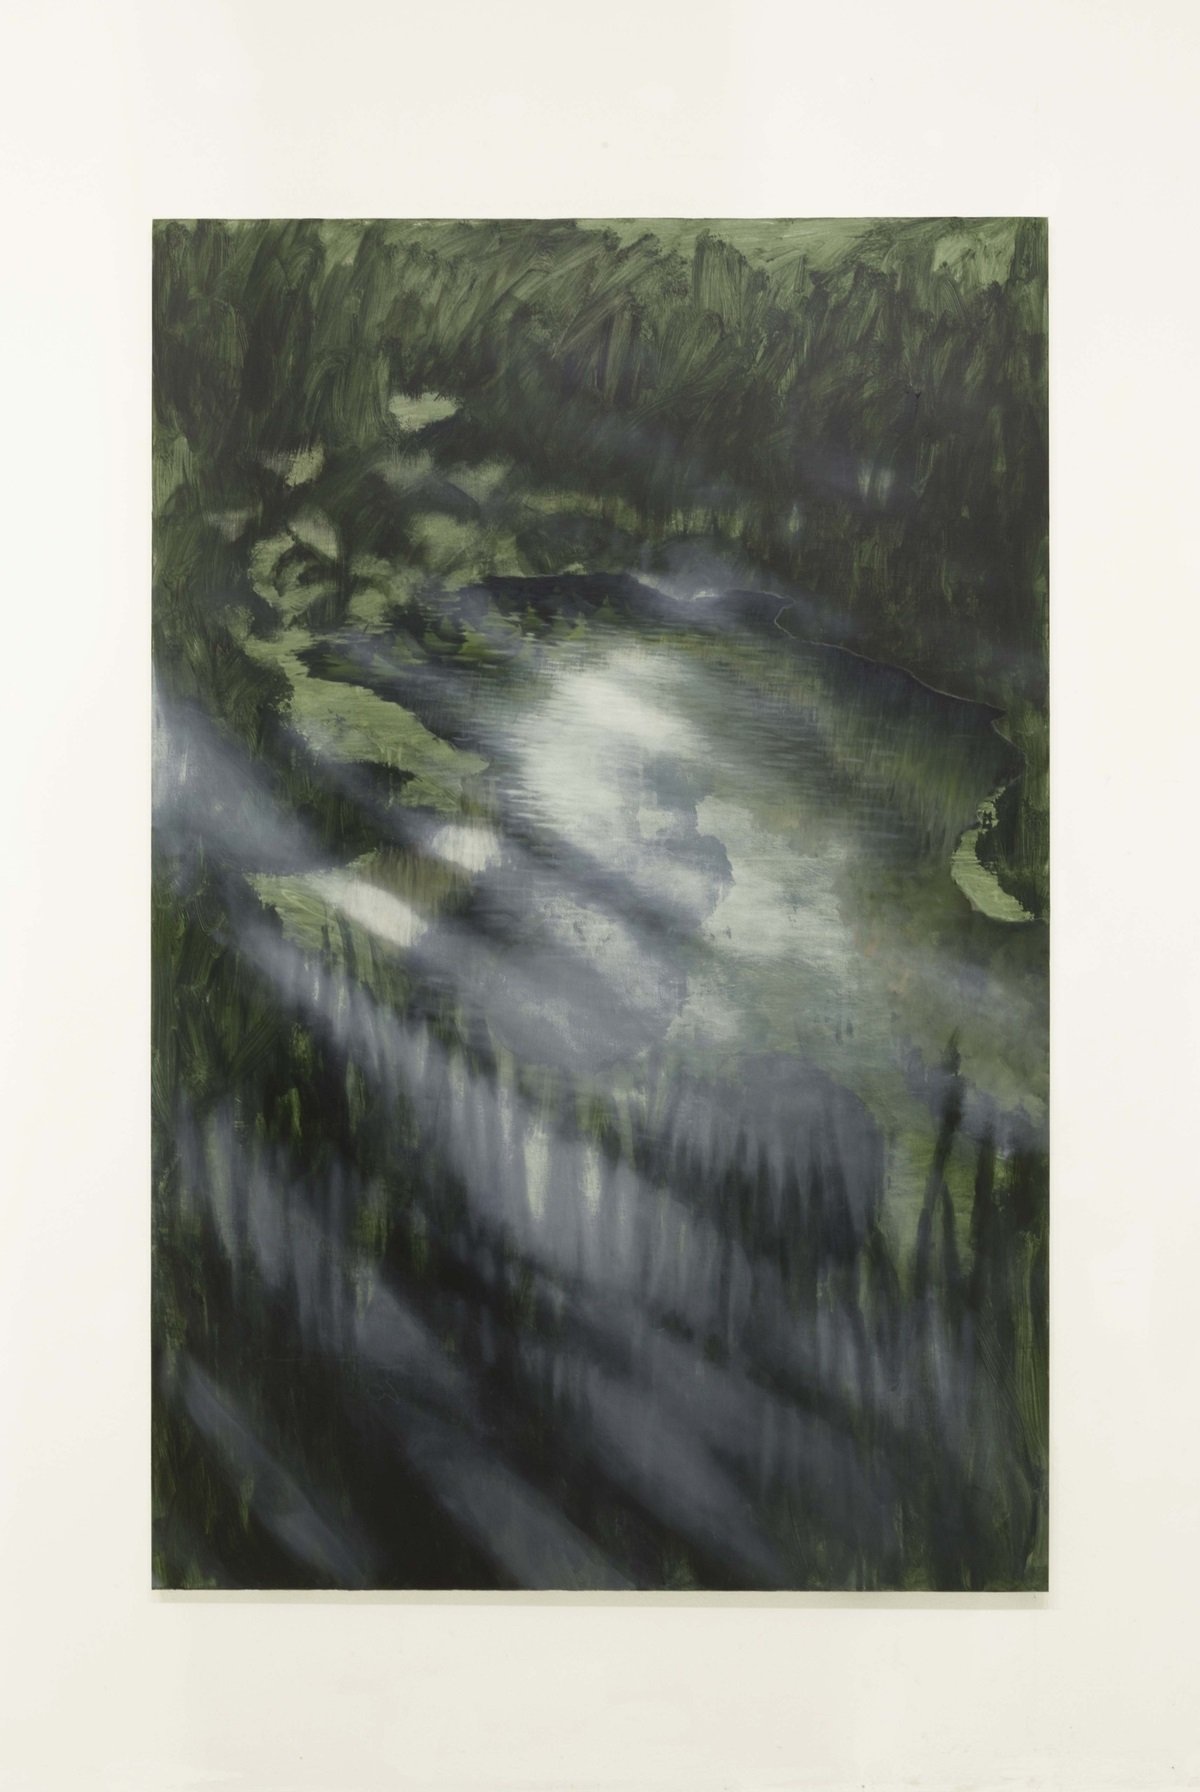 Linda Carrara, La prima passeggiata, 2020 21, acrilico, olio e matita bianca su tela, 112x170 cm